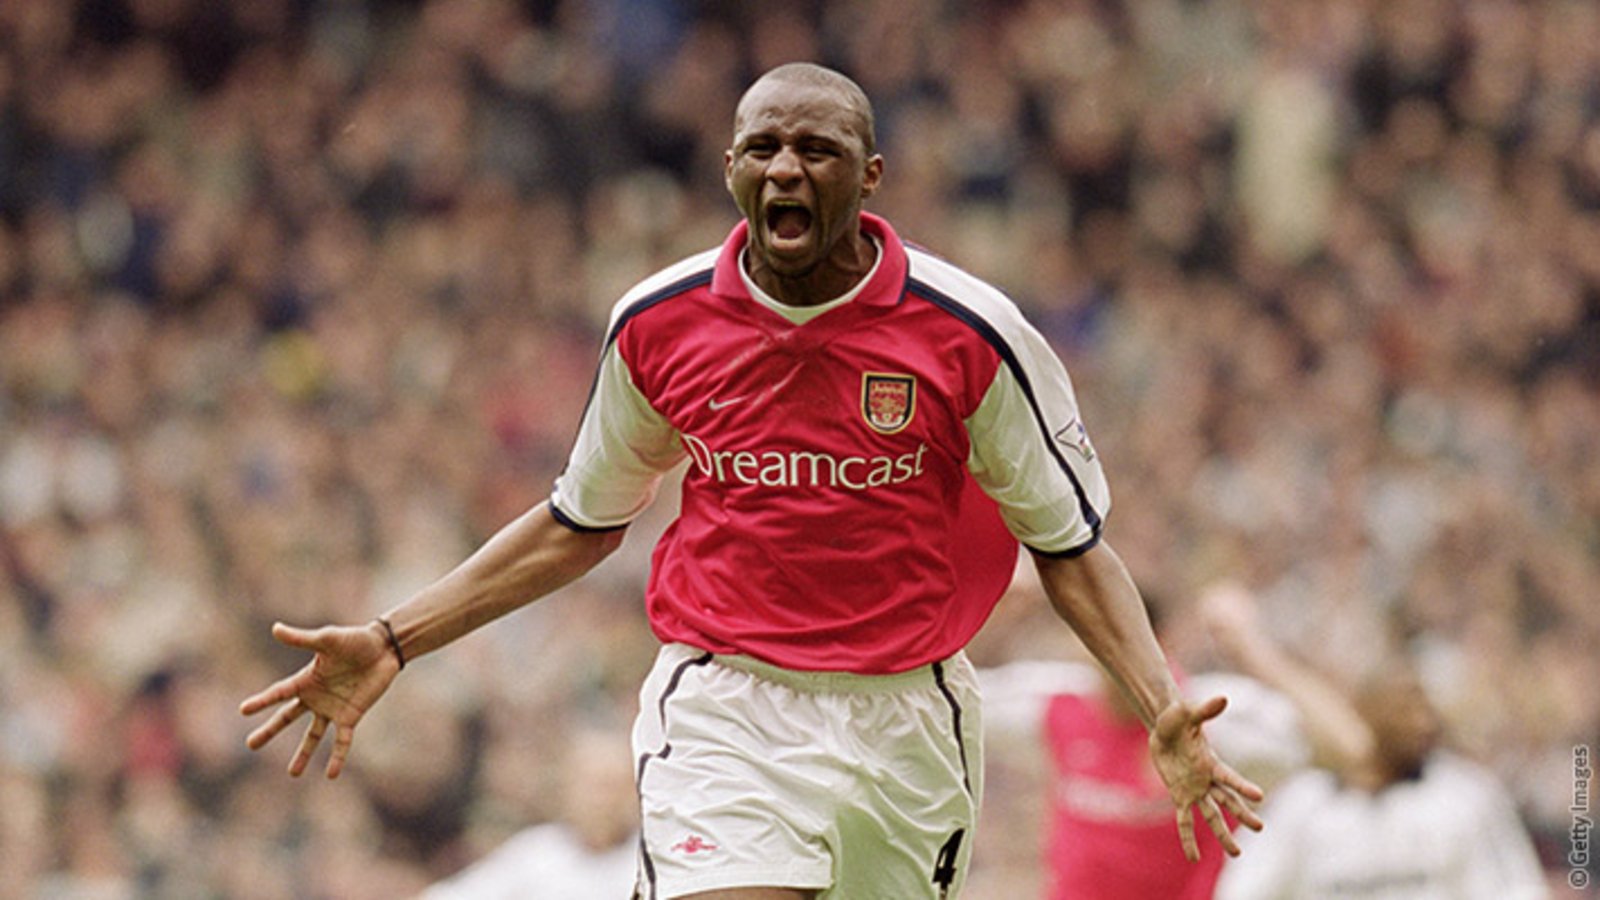 Vieira - I was always a leader | News | Arsenal.com